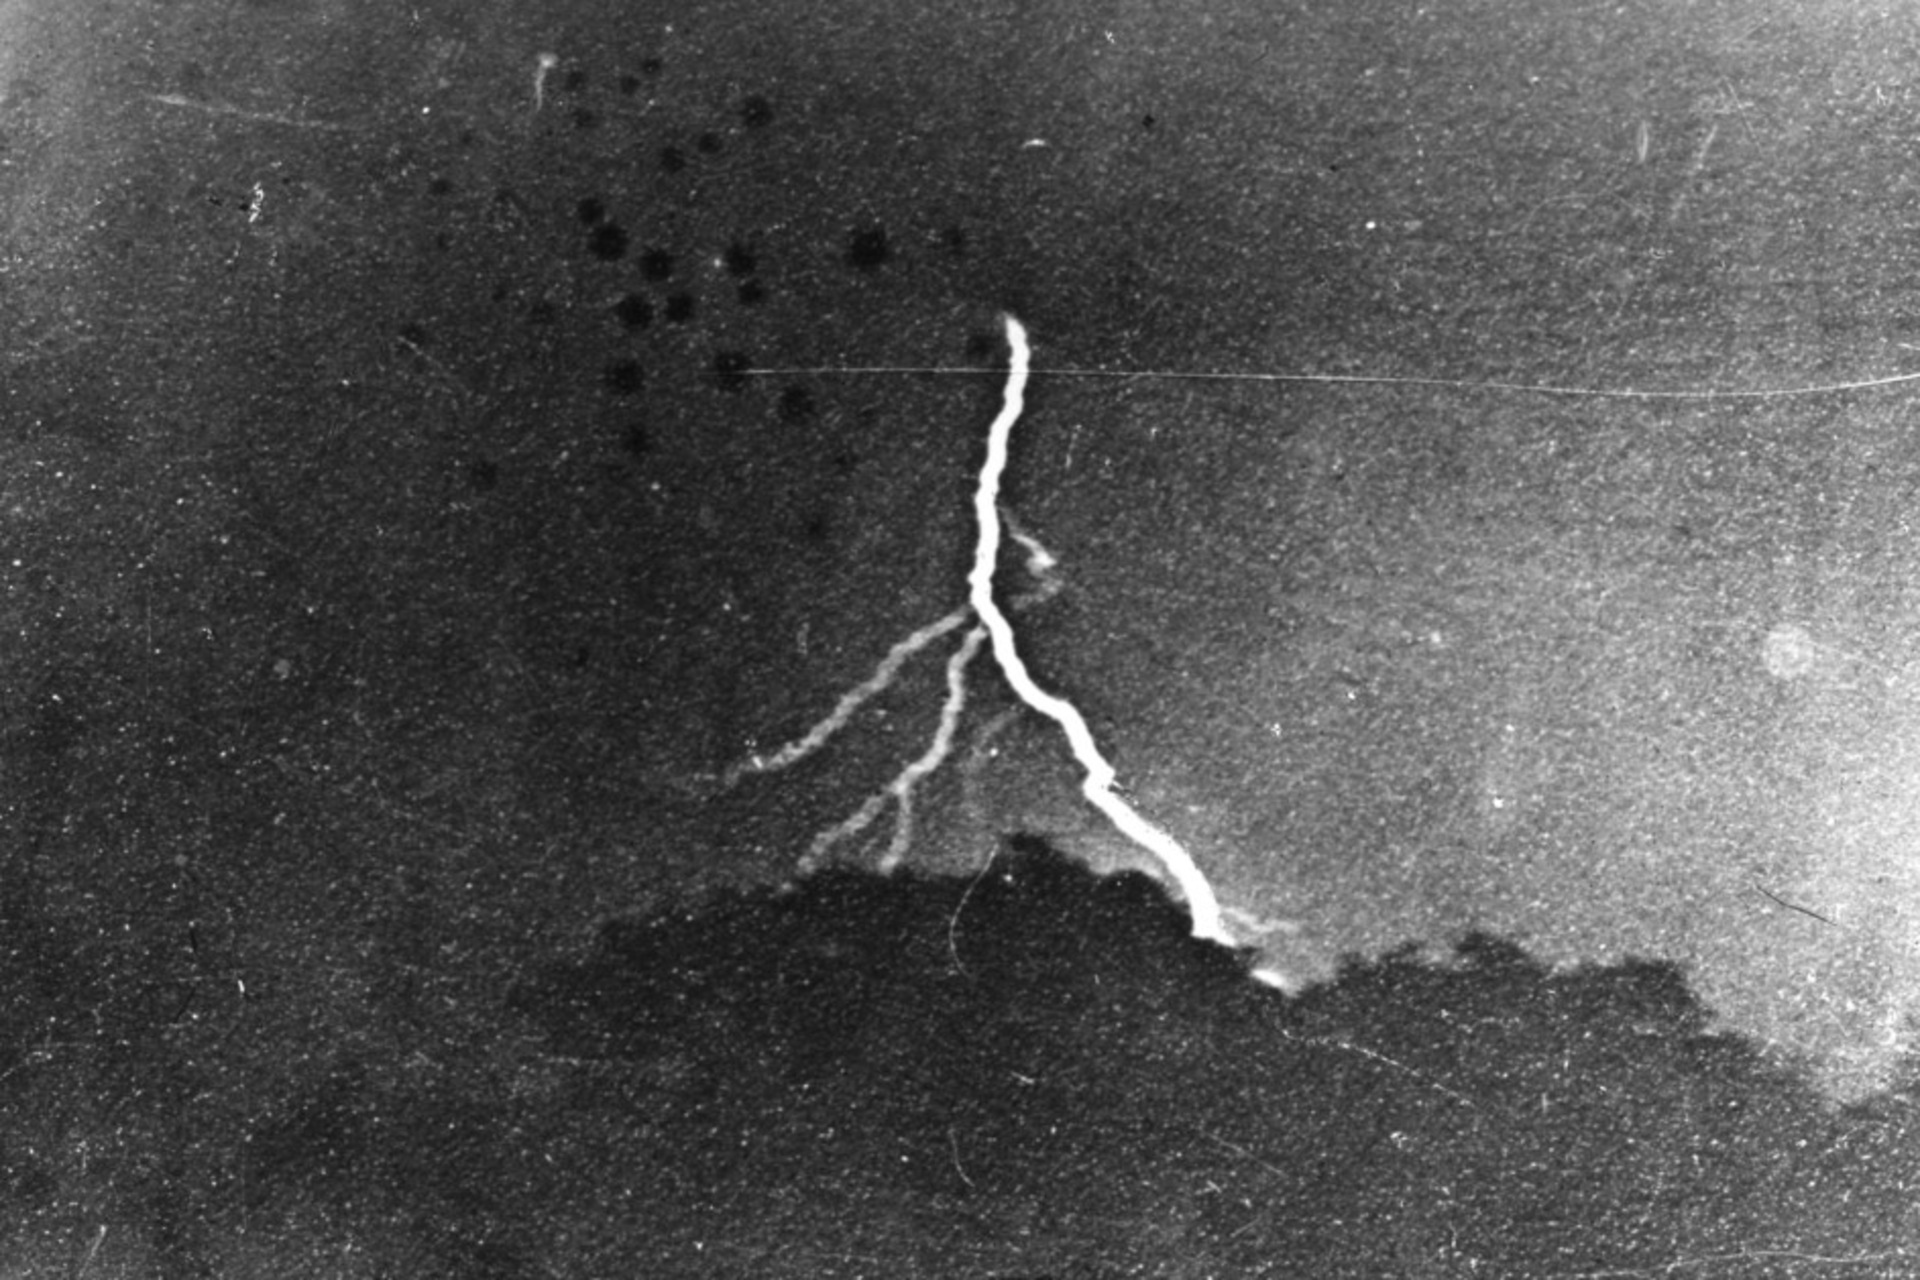 Bliksem: de eerste foto van bliksem, gemaakt door William Nicholson Jennings op 2 september 1882 in Philadelphia, en bewaard als gelatinezilverdruk in The Franklin Institute